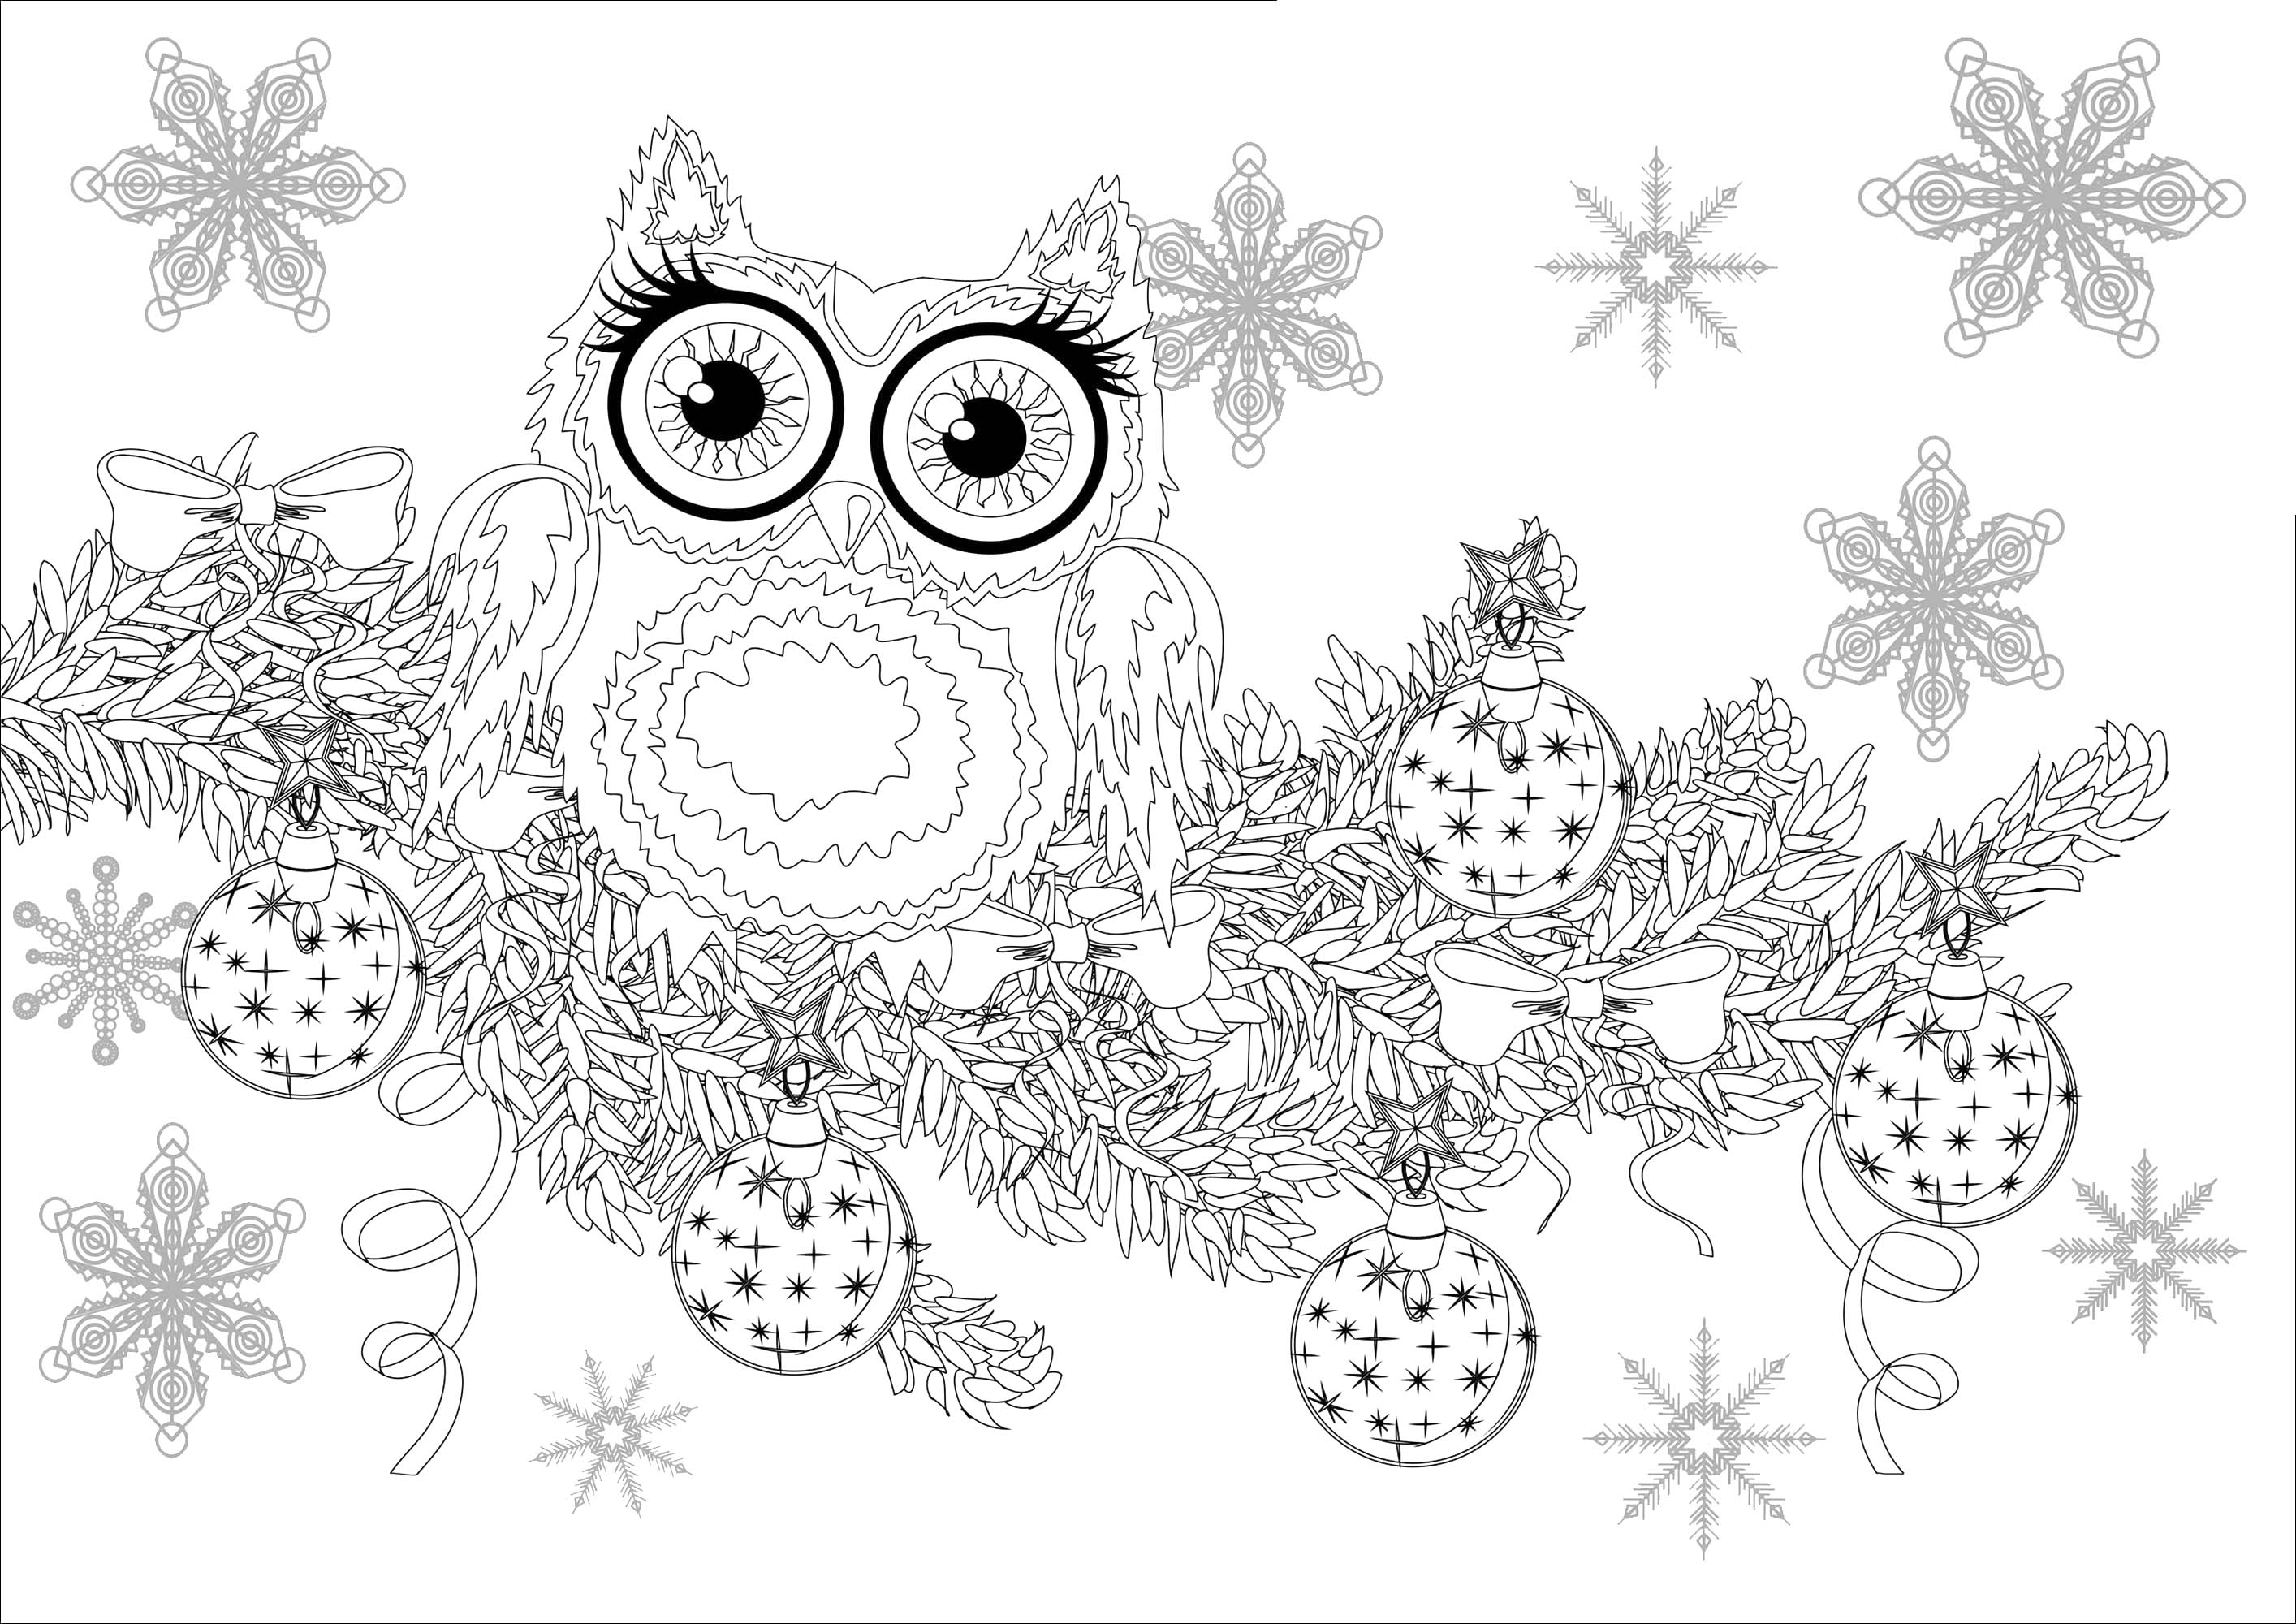 Desenhos para colorir para crianças de Natal para imprimir, Fonte : 123rf   Artista : Oksana Tsvyk